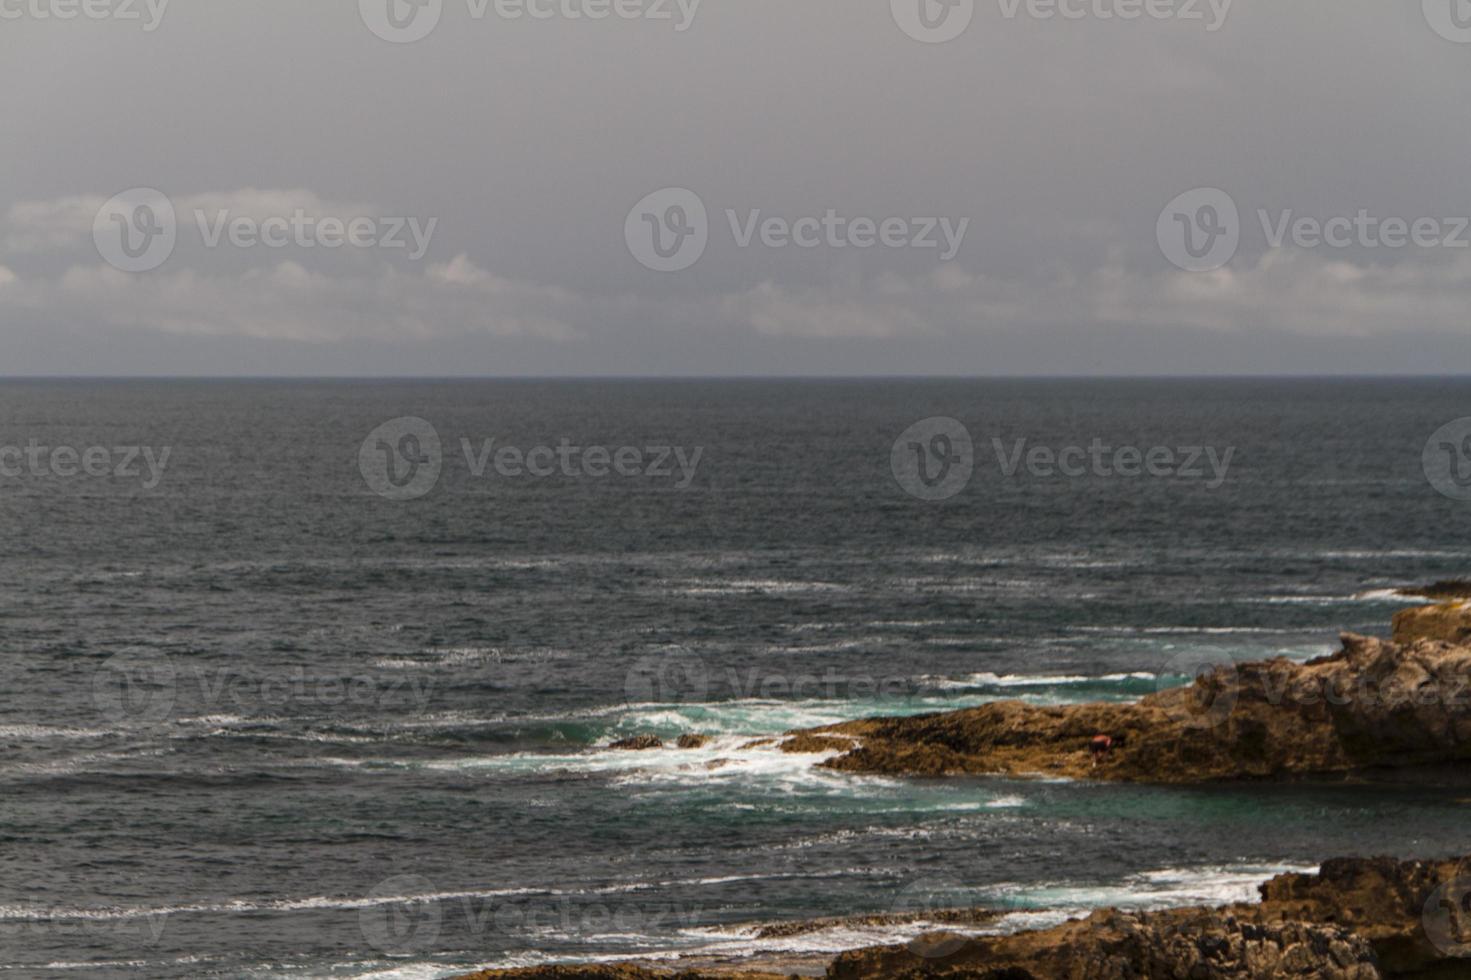 las olas peleando sobre la costa rocosa desierta del océano atlántico, portugal foto